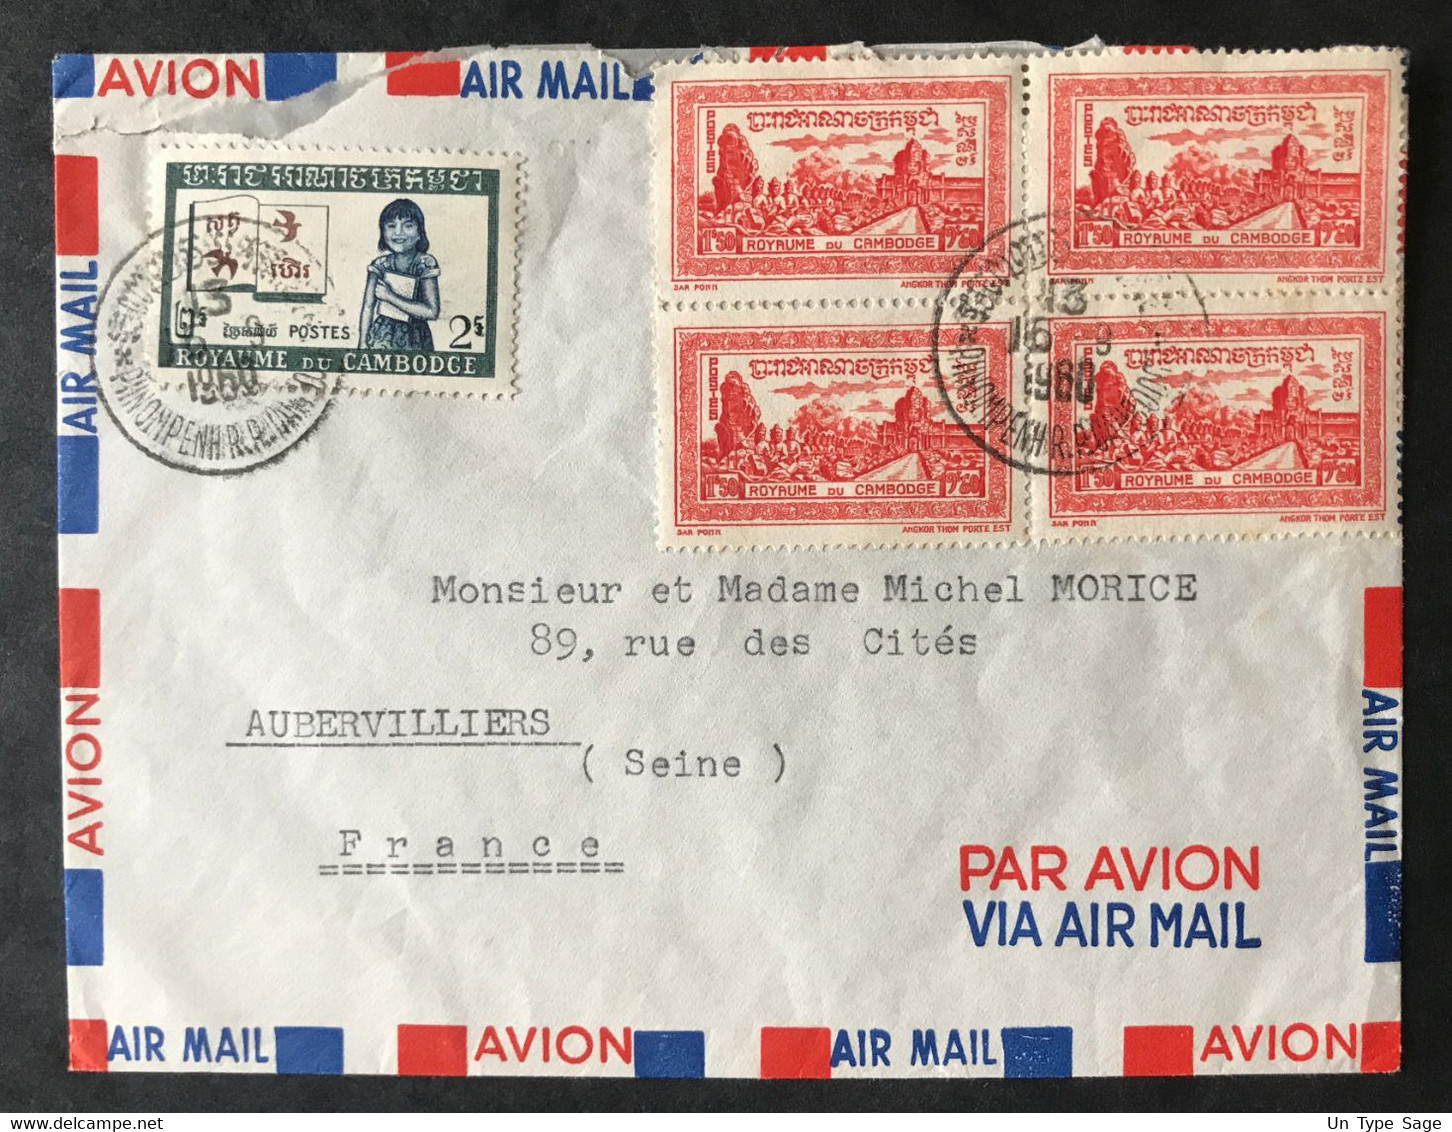 Cambodge N°29 (x4) Et N°92 Sur Enveloppe De Phnom Penh Pour Aubervilliers 16.9.1960 - (B3236) - Kambodscha